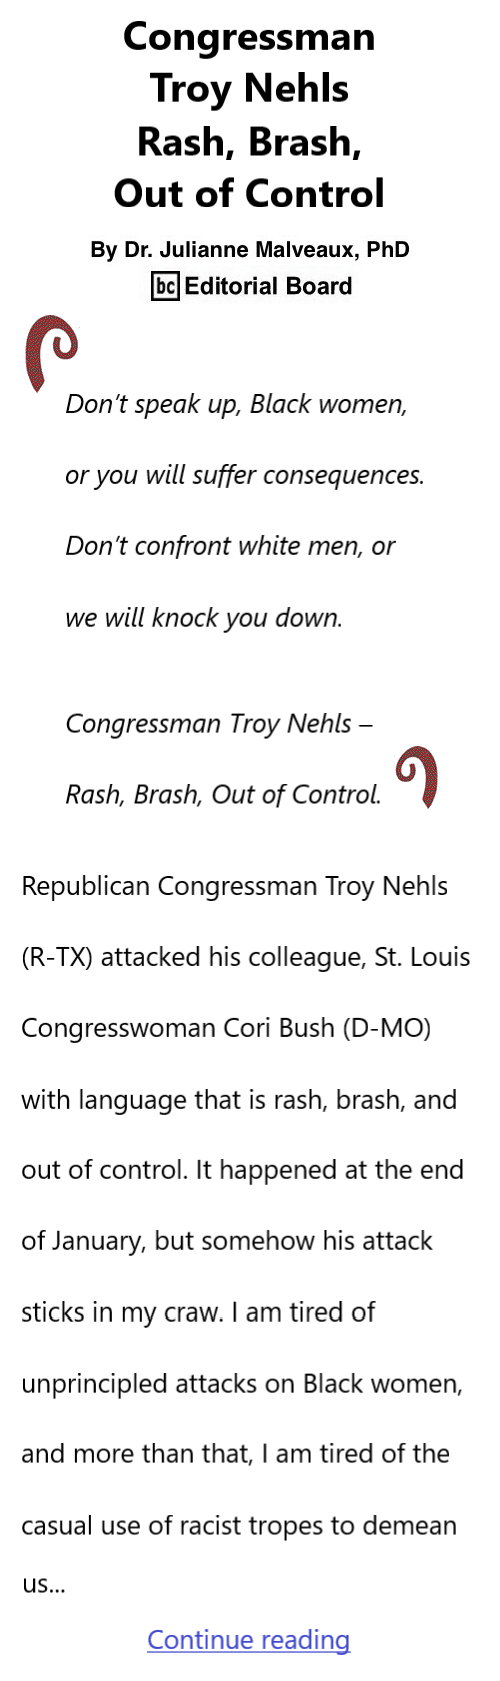 BlackCommentator.com Feb 8, 2024 - Issue 987: Congressman Troy Nehls – Rash, Brash, Out of Control By Dr. Julianne Malveaux, PhD, BC Editorial Board